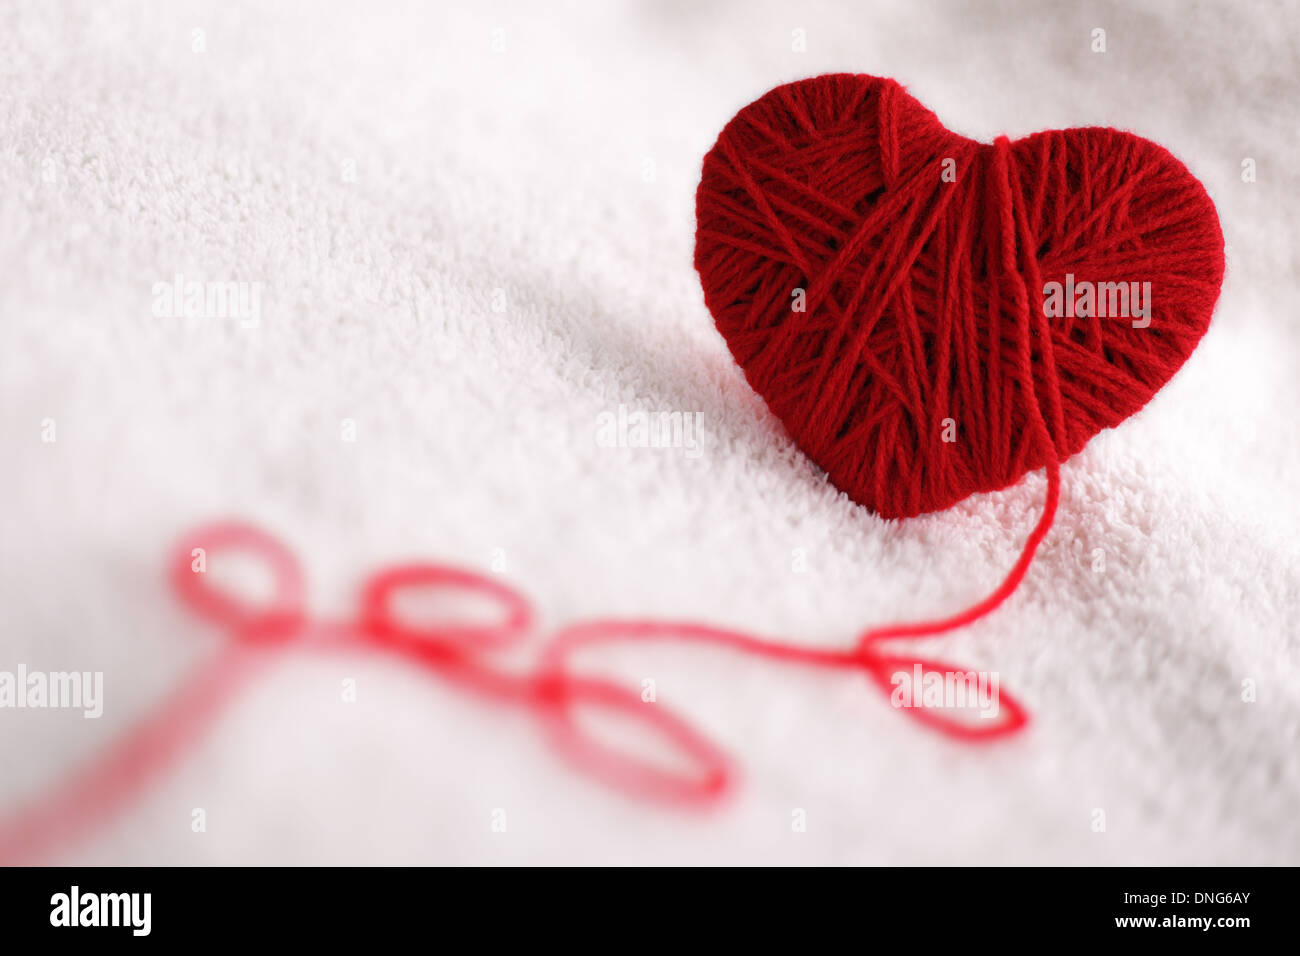 Yarn of wool in heart shape symbol Stock Photo